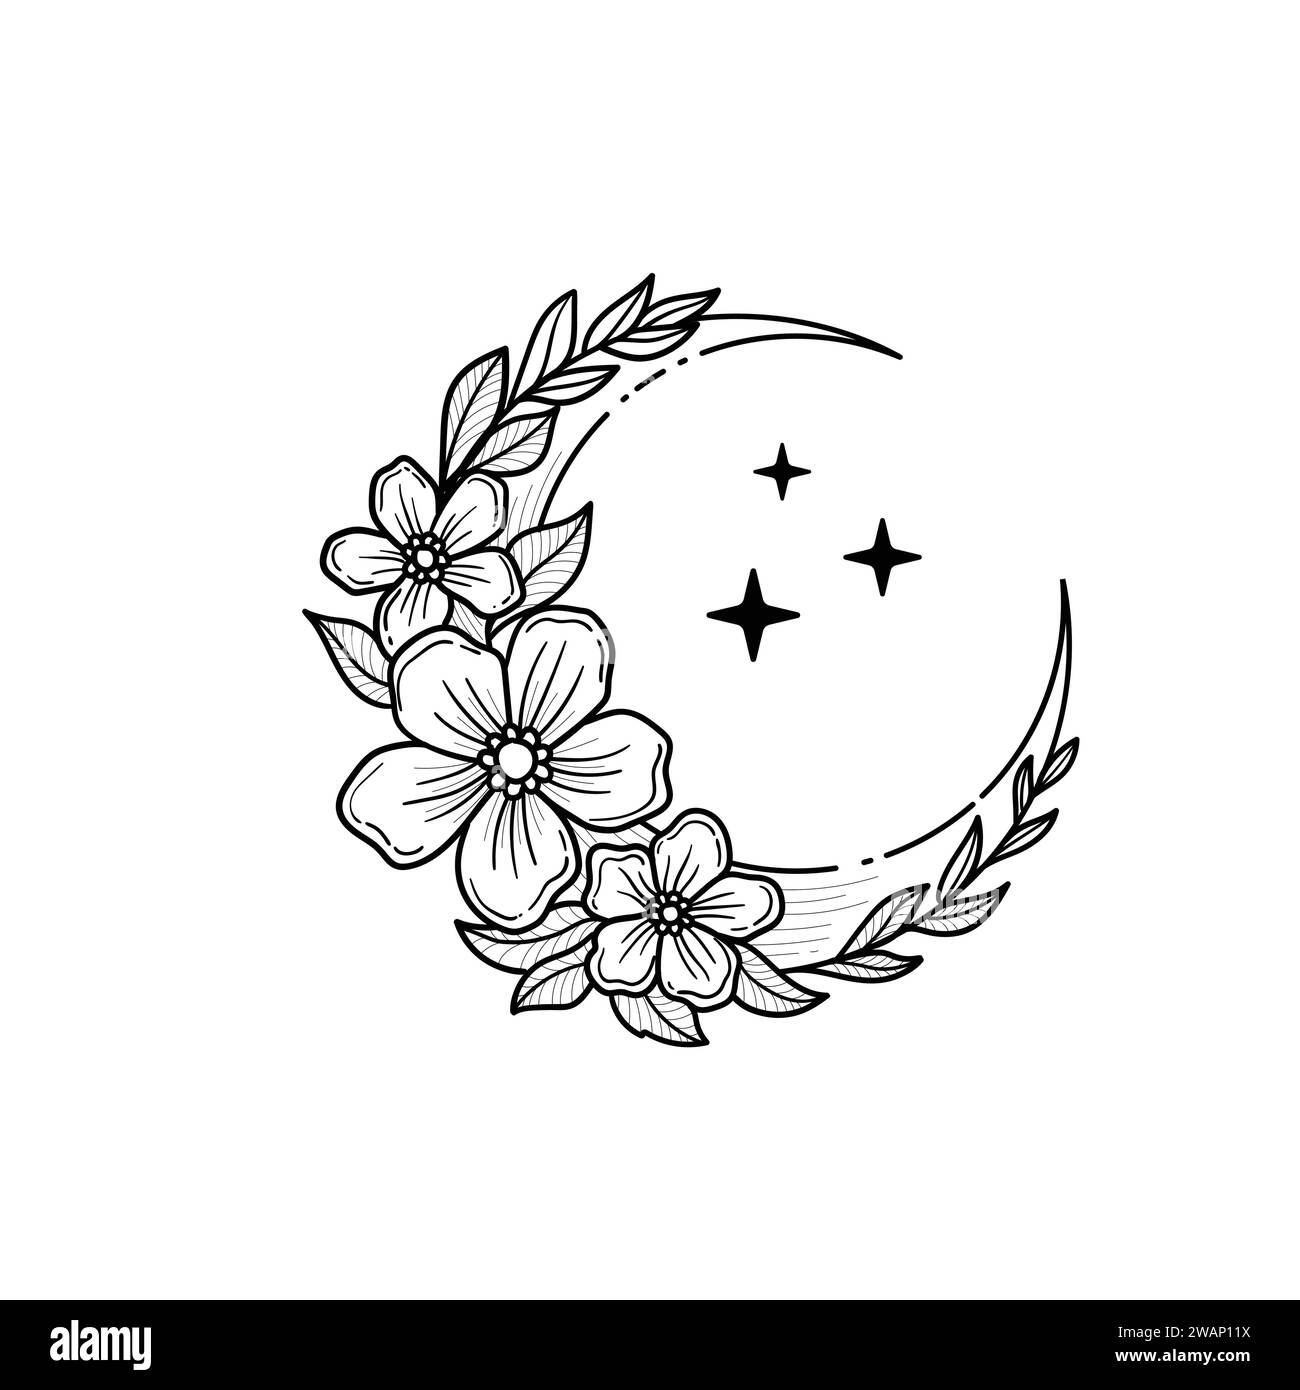 Contour floral croissant lune avec fleur, branches feuillues et étoiles isolées sur fond blanc, Vector Crescent Outline Emblem pour la conception de tatouage, lo Illustration de Vecteur